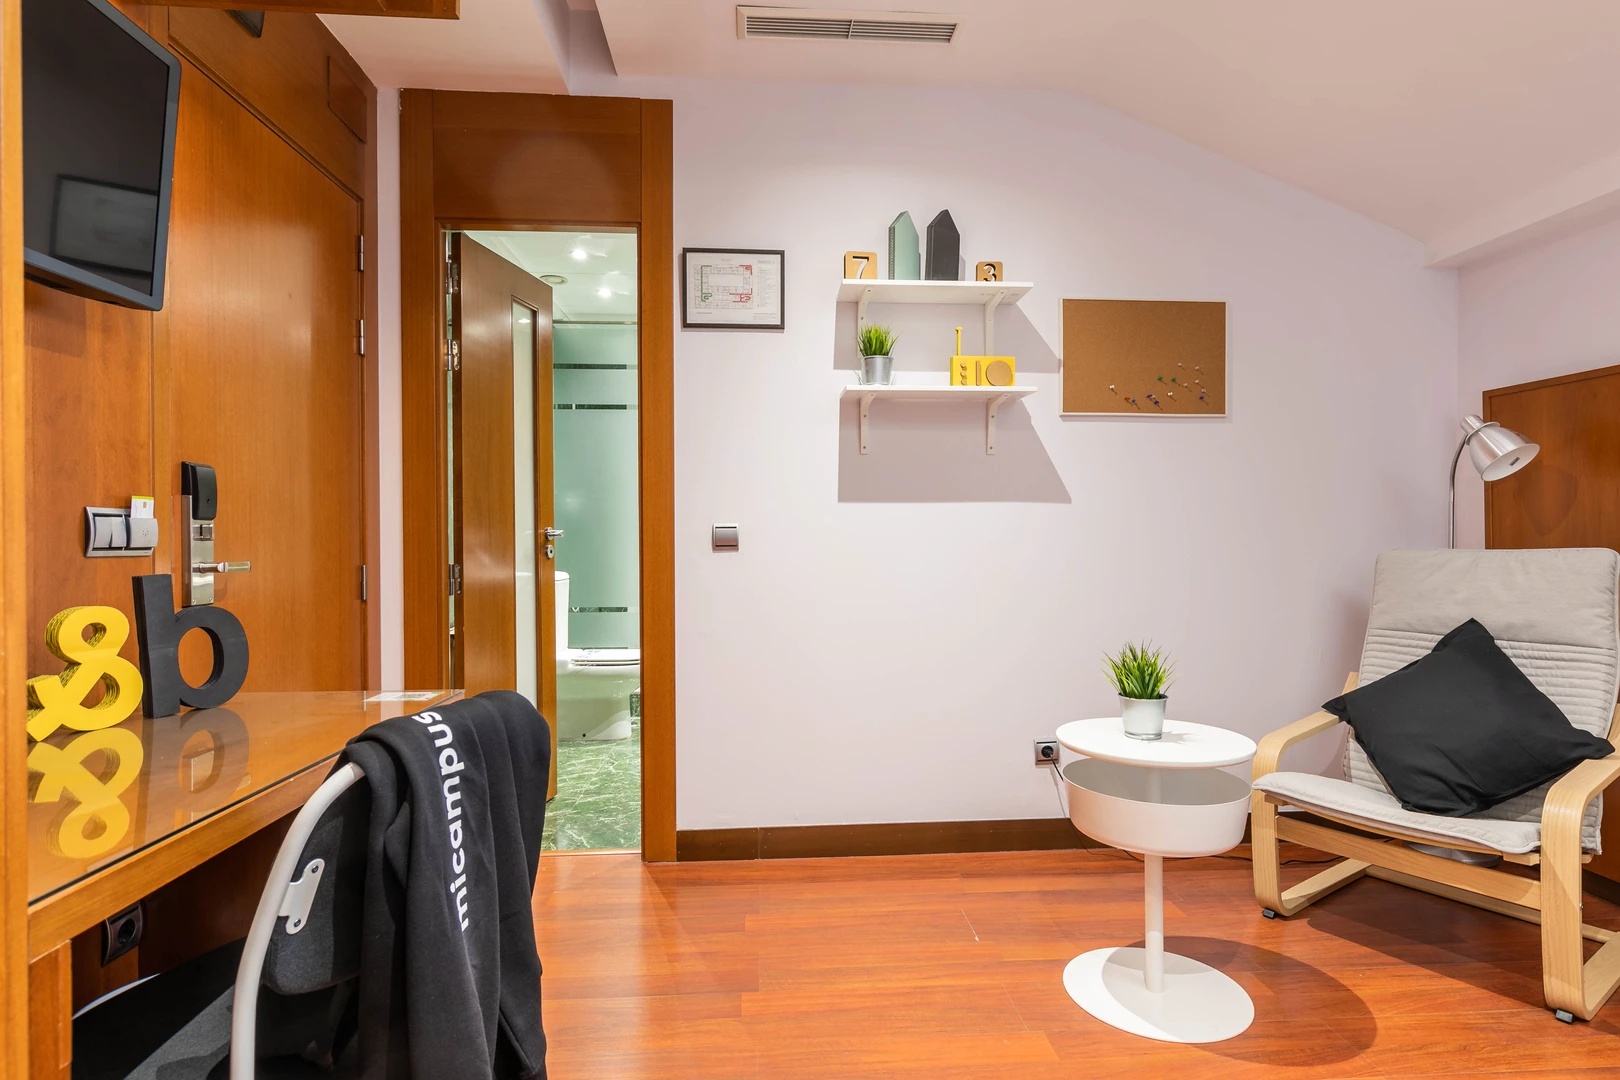 Cheap private room in aranjuez